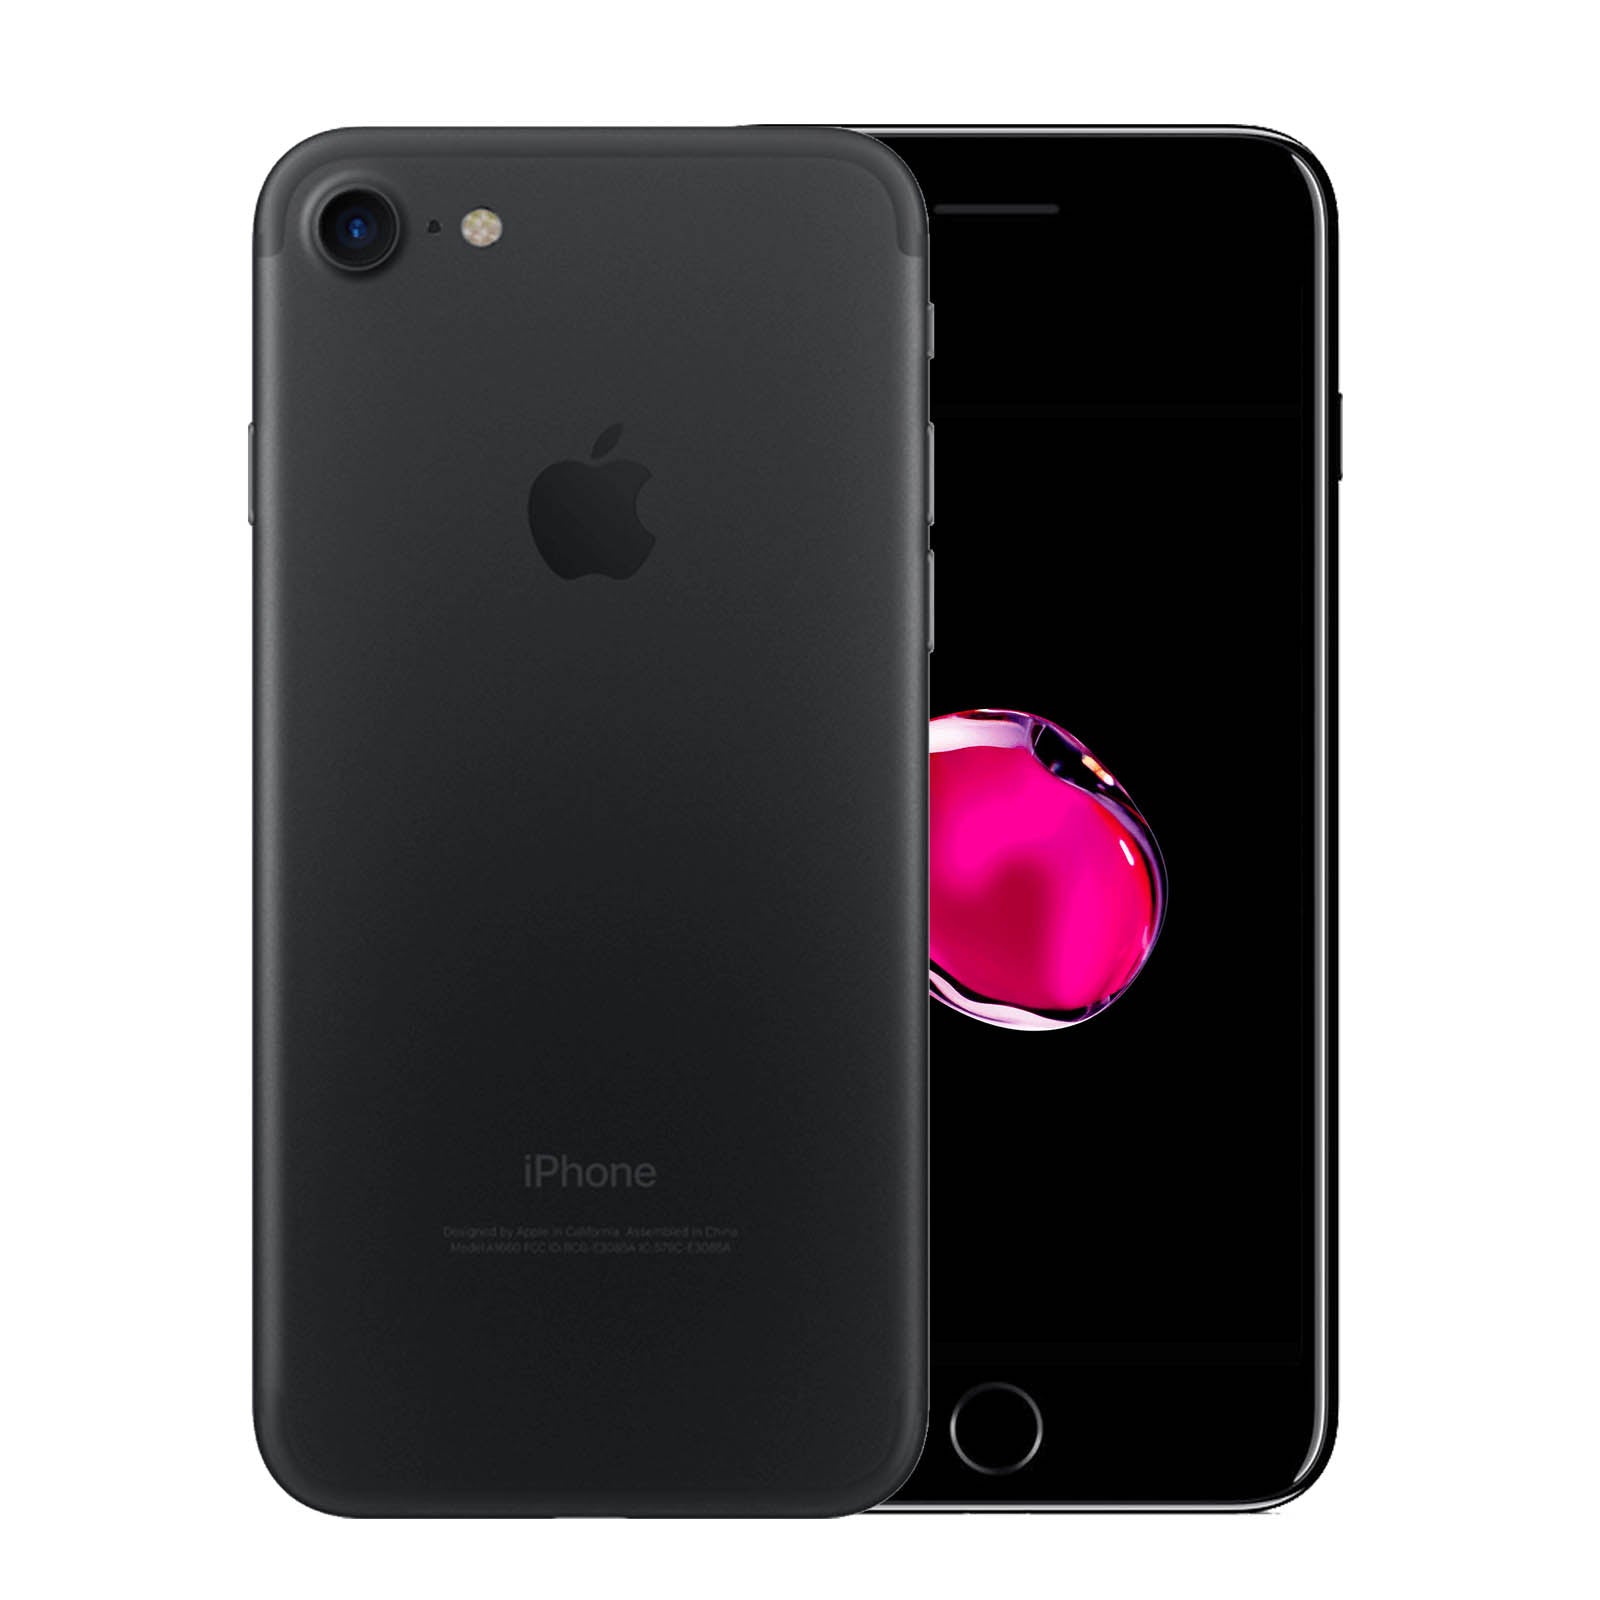 Apple iPhone 7 128GB Black Fair - Unlocked